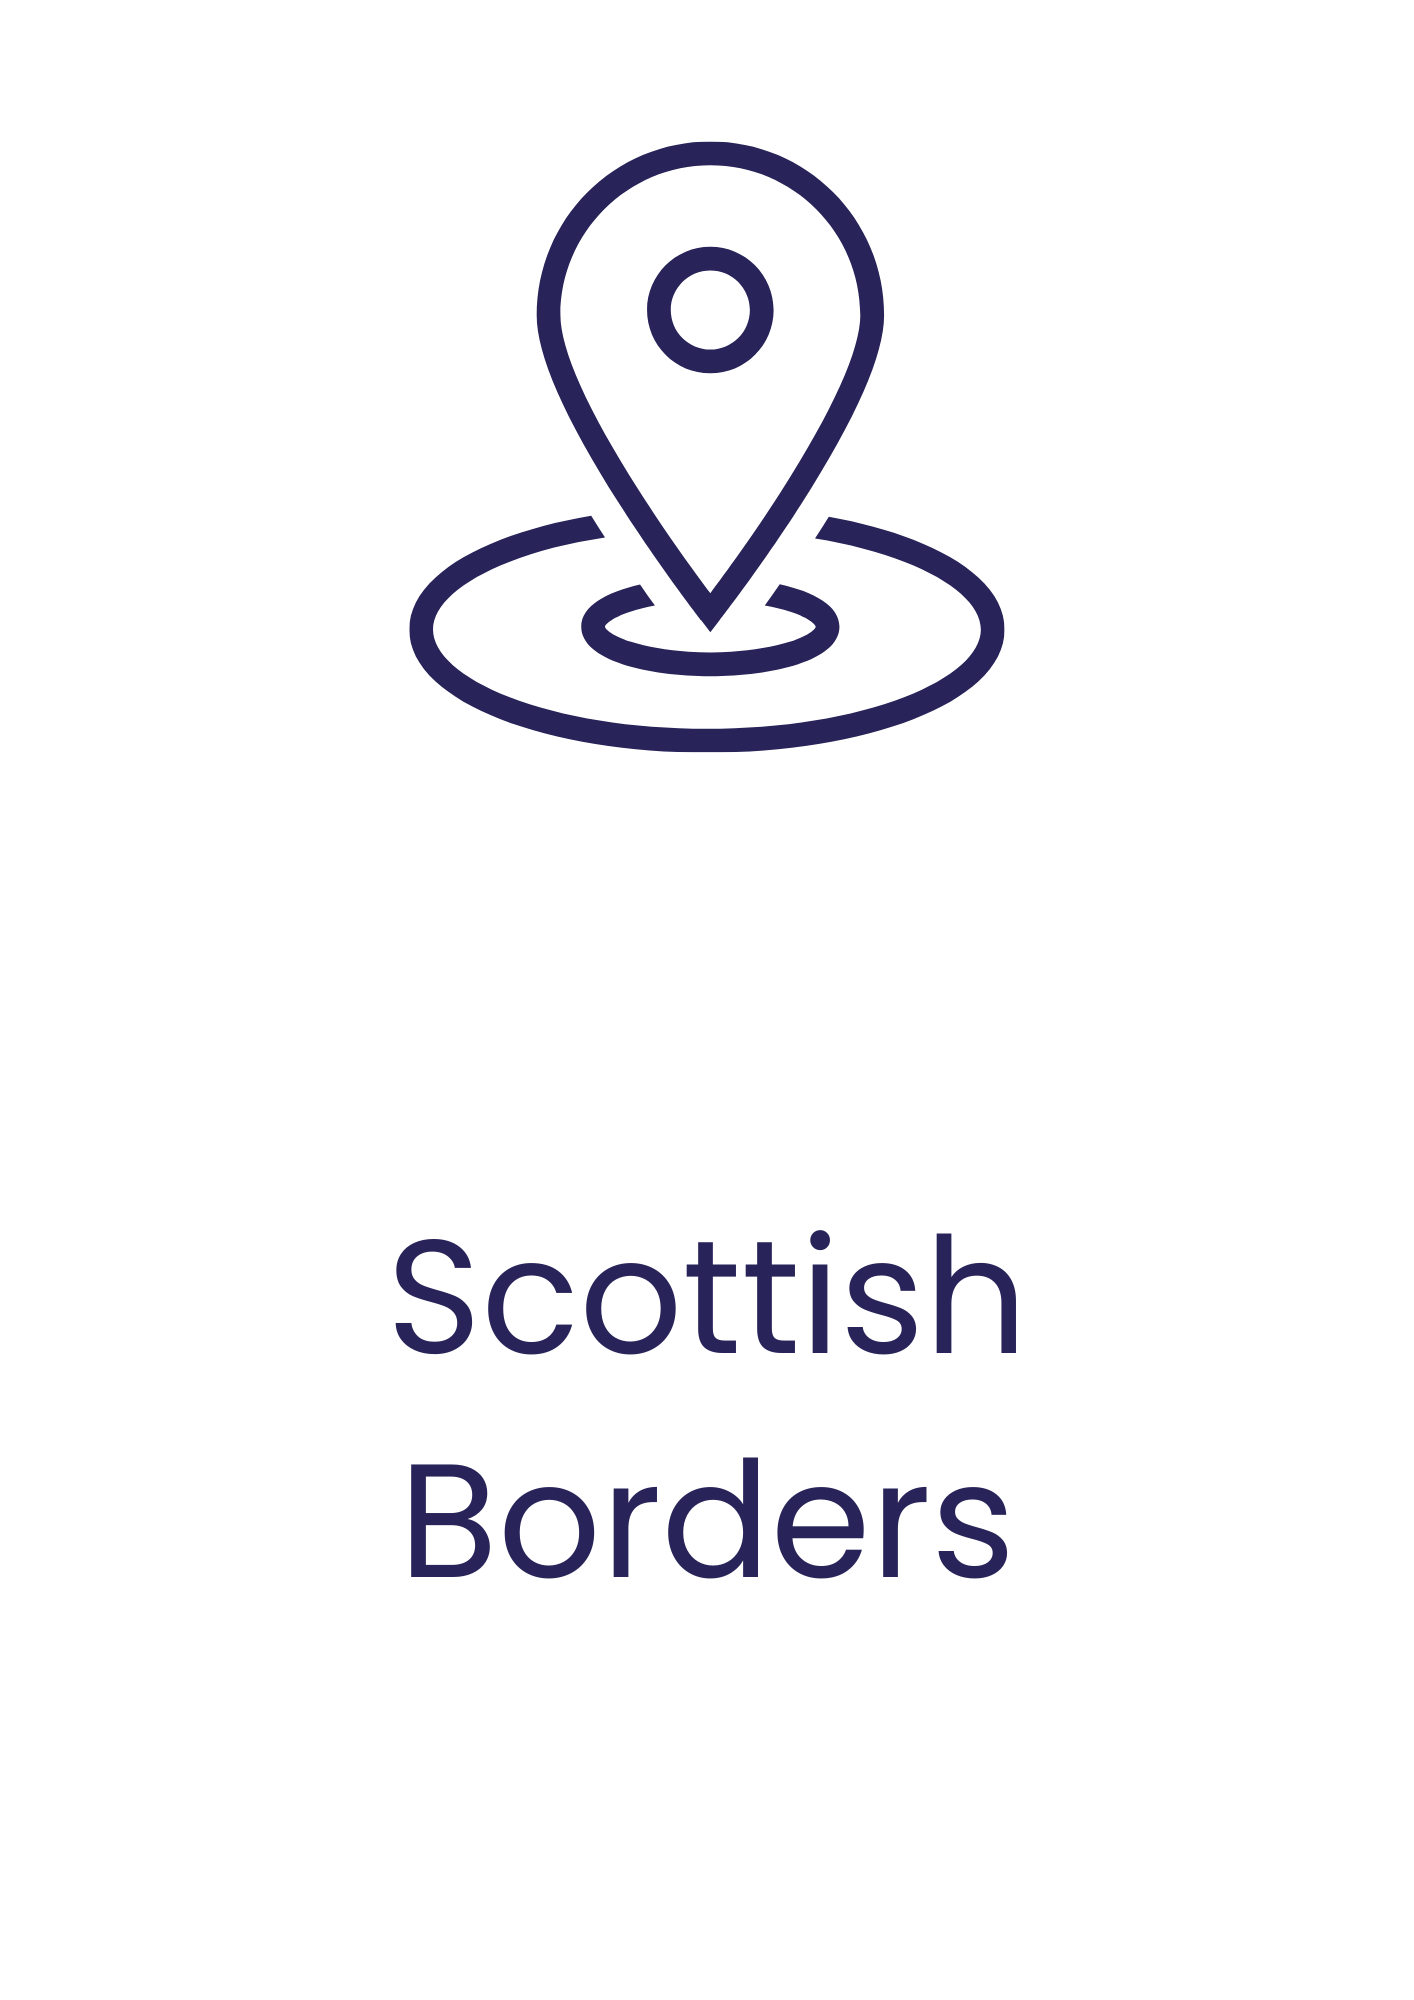 Scottish Borders funding